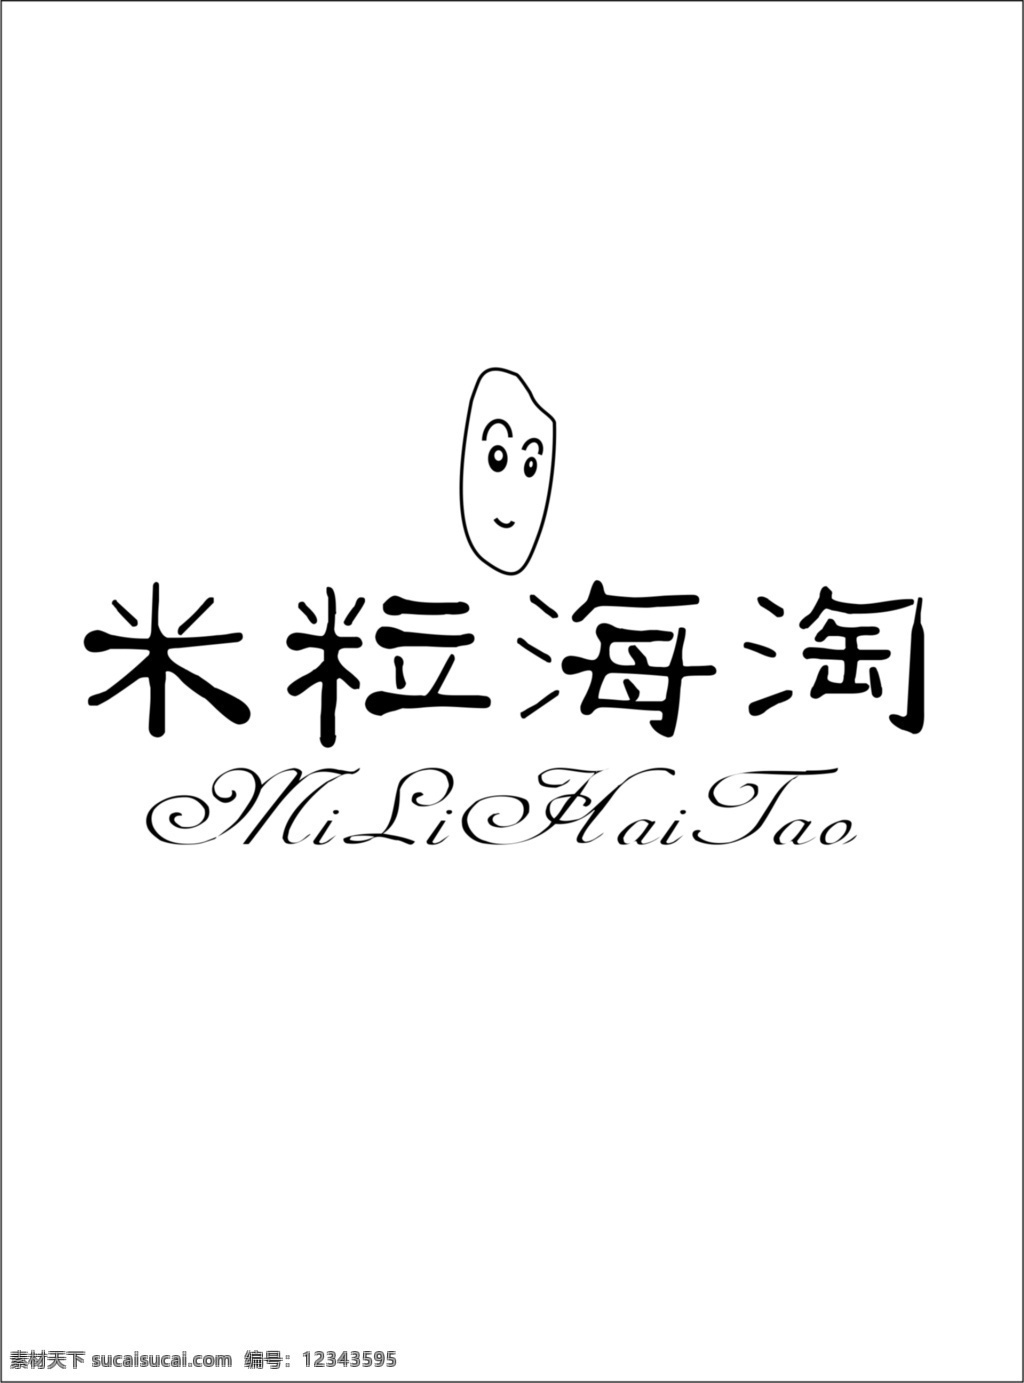 米粒海淘 米粒 海淘 艺术字 字体 图标 白色